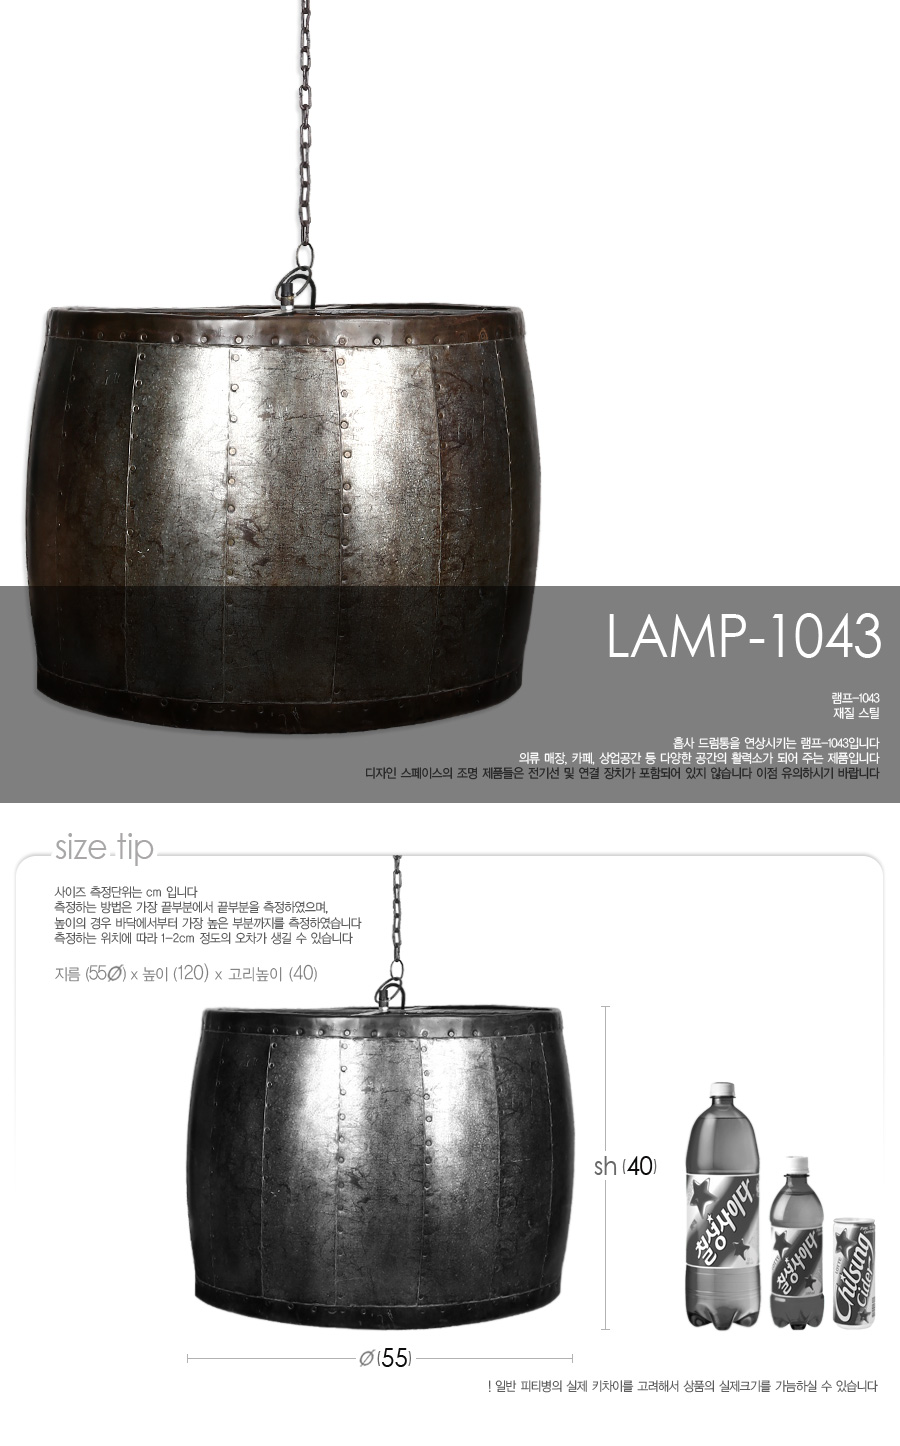 lamp-1043_01.jpg